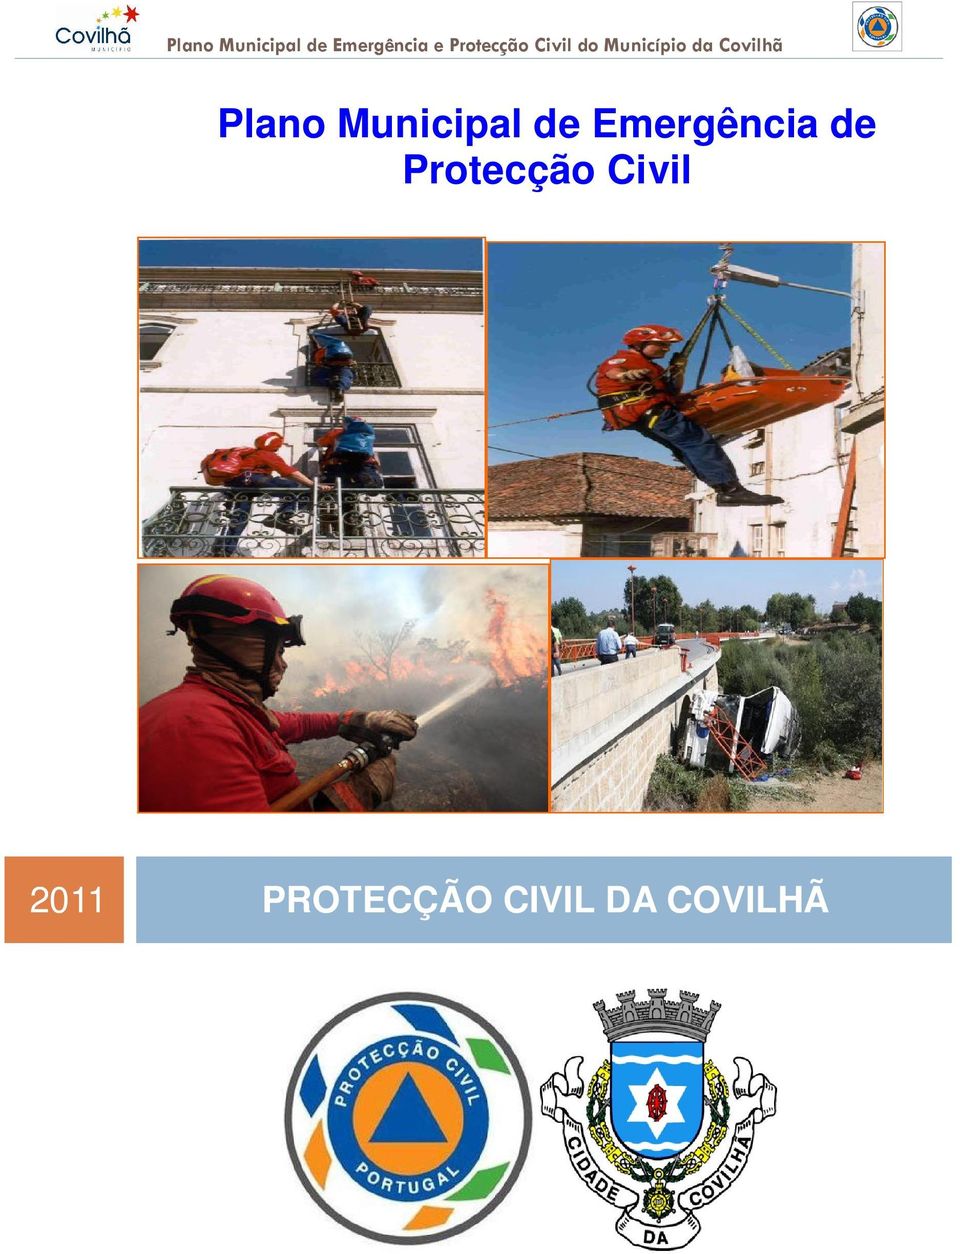 Protecção Civil